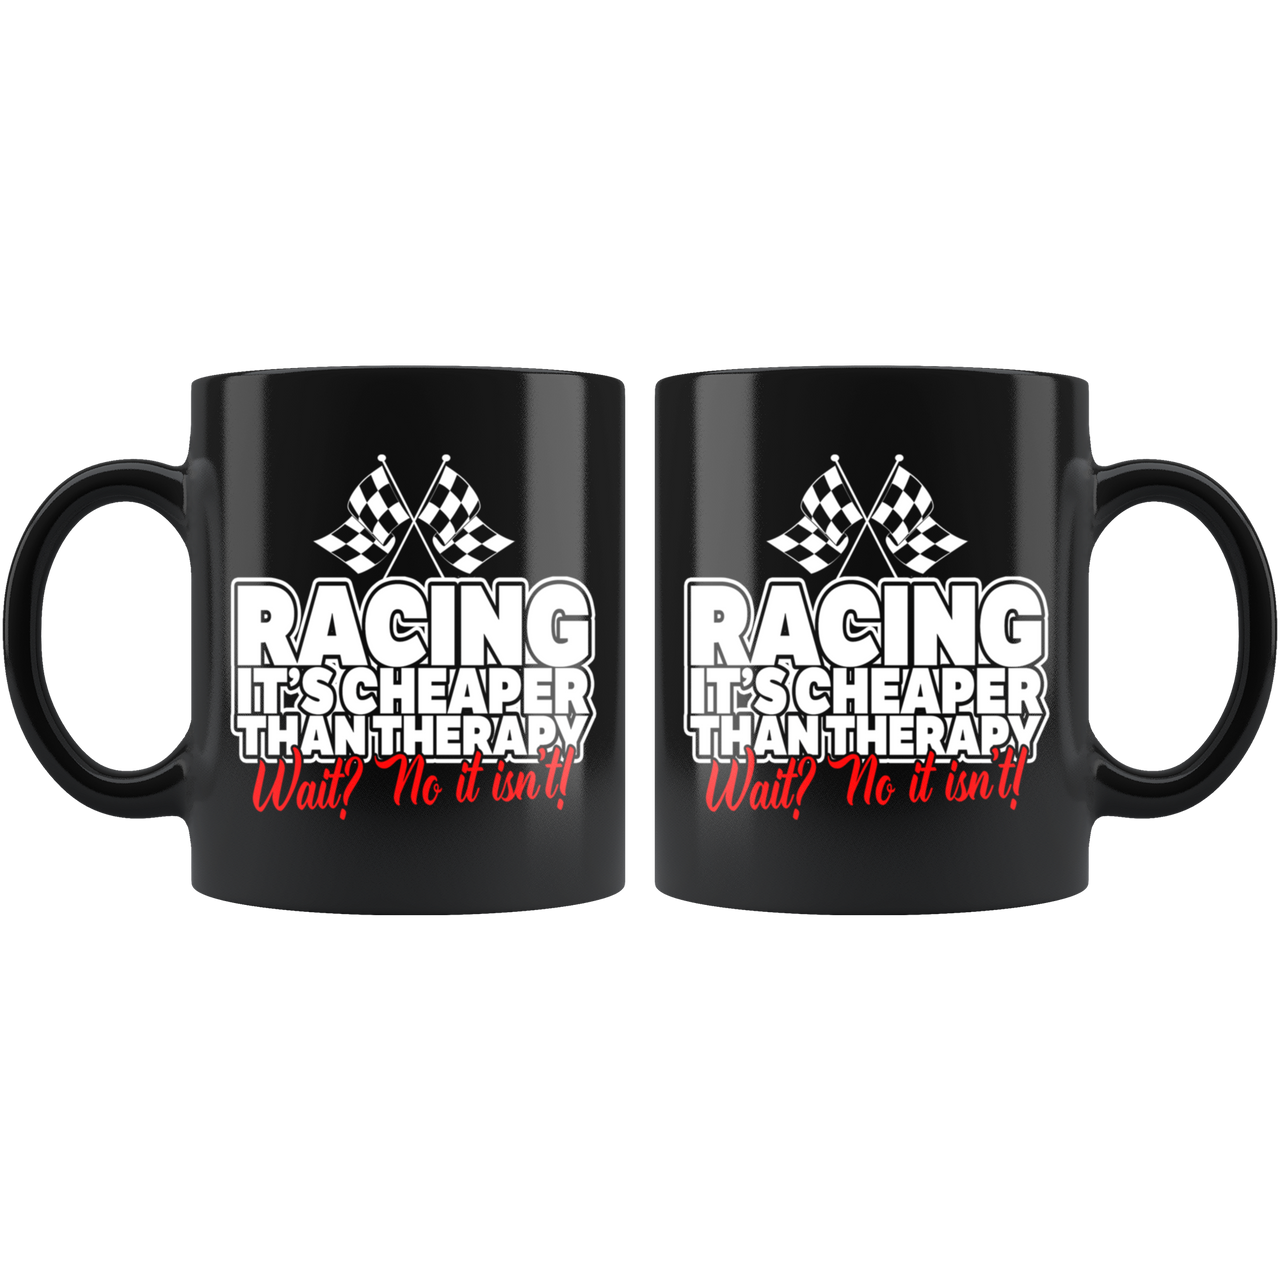 Racing Therapy Mug!